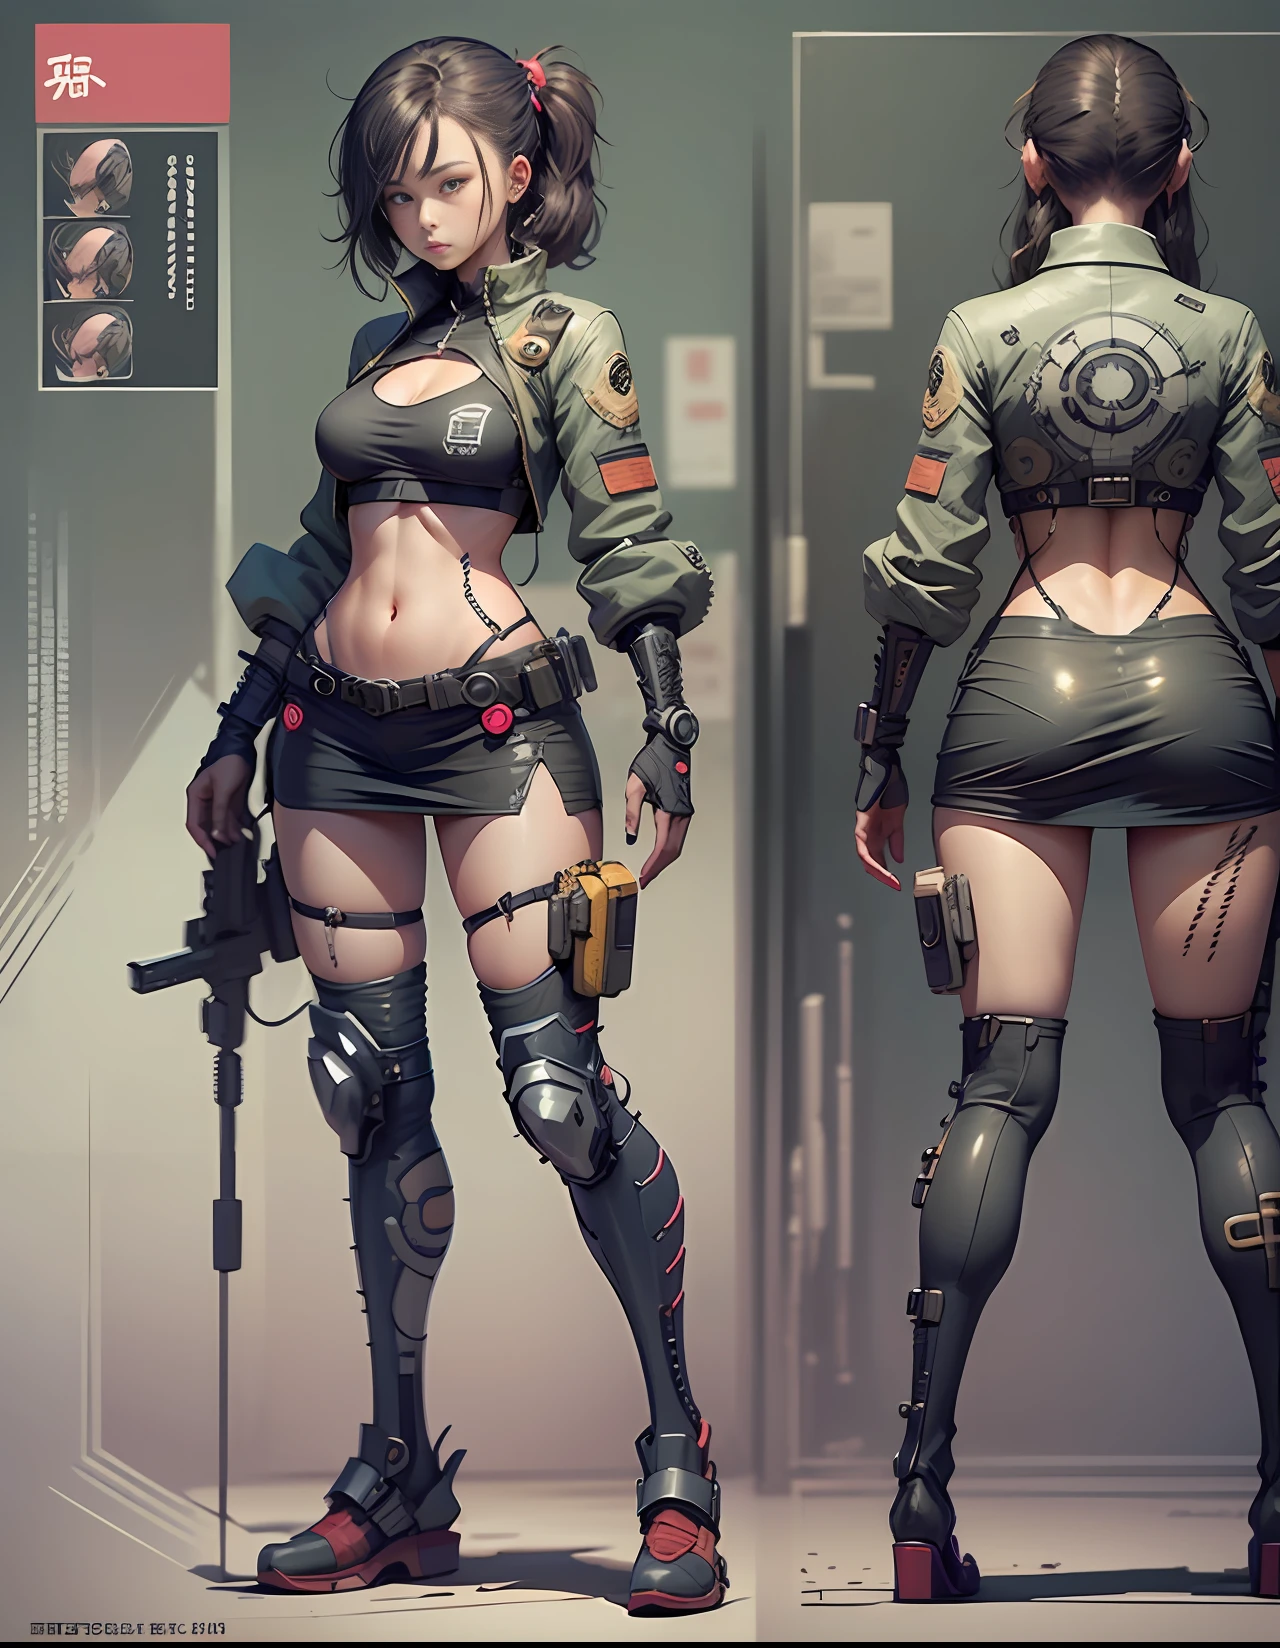 Hoja de personaje de estilo manga japonés de chica cyberpunk., frente y detrás, cuerpo completo, Colorida ropa cyberpunk, fondo blanco y negro, llevando un rifle en la espalda, equipo, detallado, Intrincado